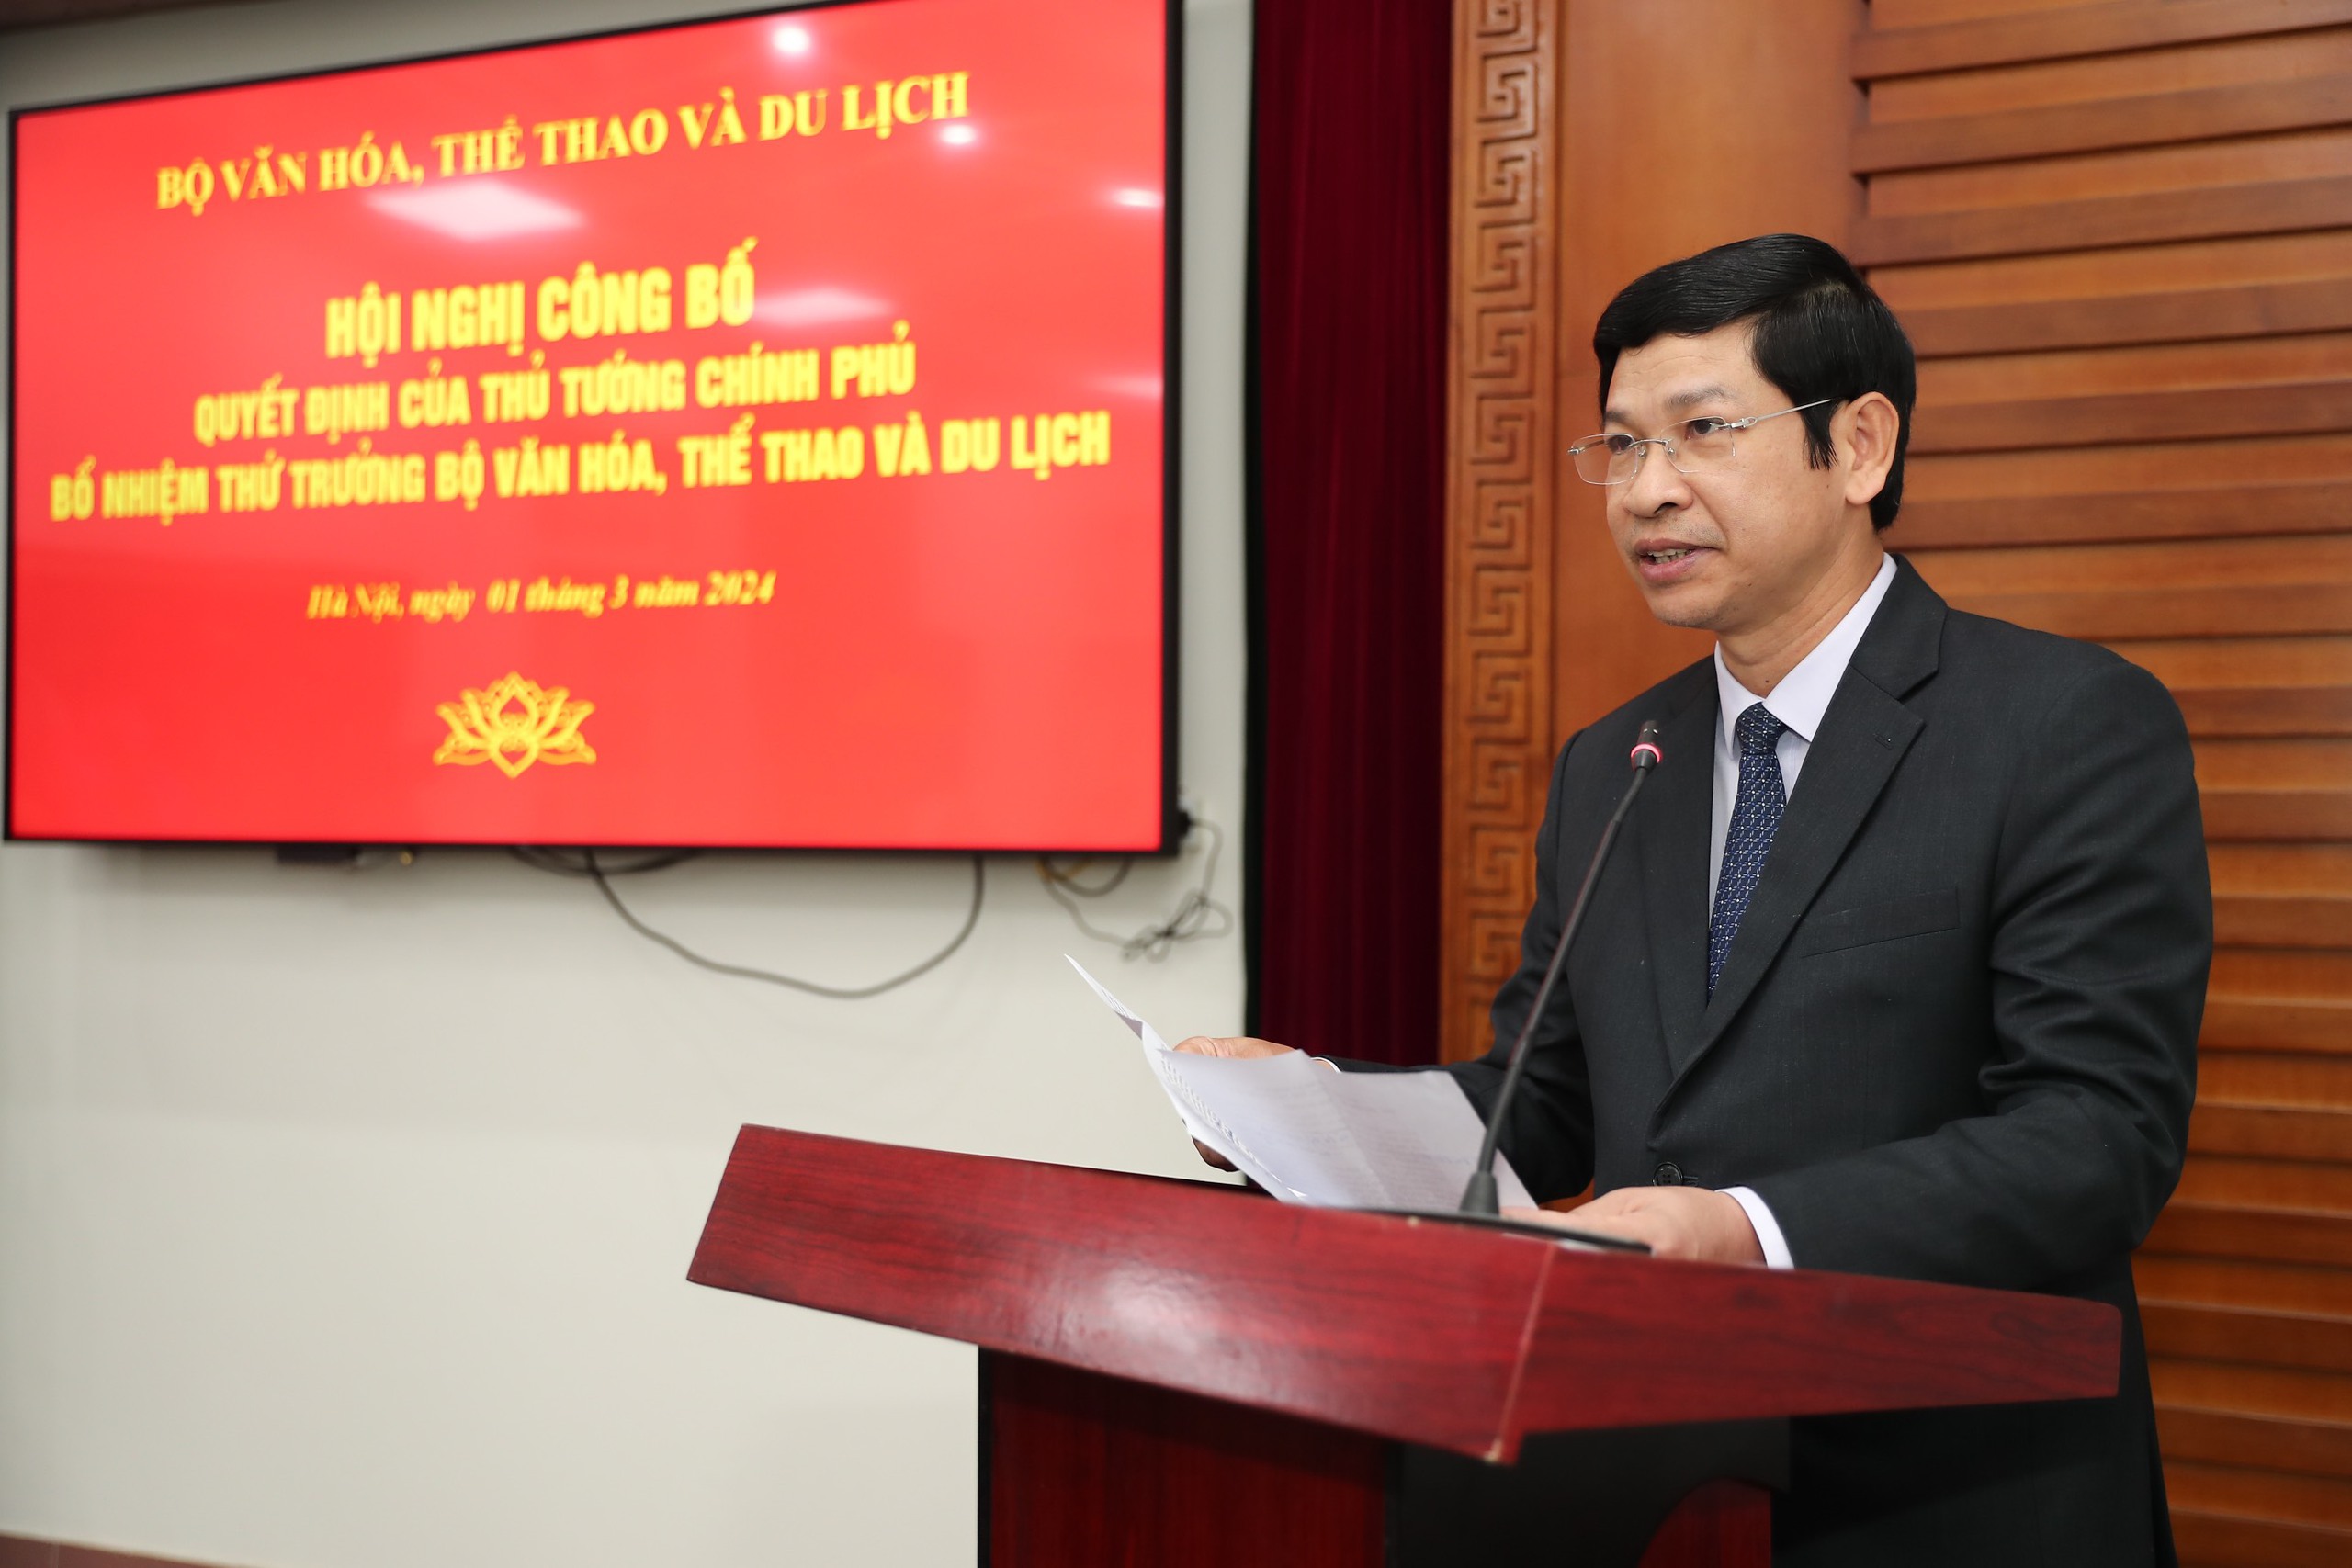 Trao quyết định bổ nhiệm ông Hồ An Phong giữ chức Thứ trưởng Bộ VHTTDL - Ảnh 4.